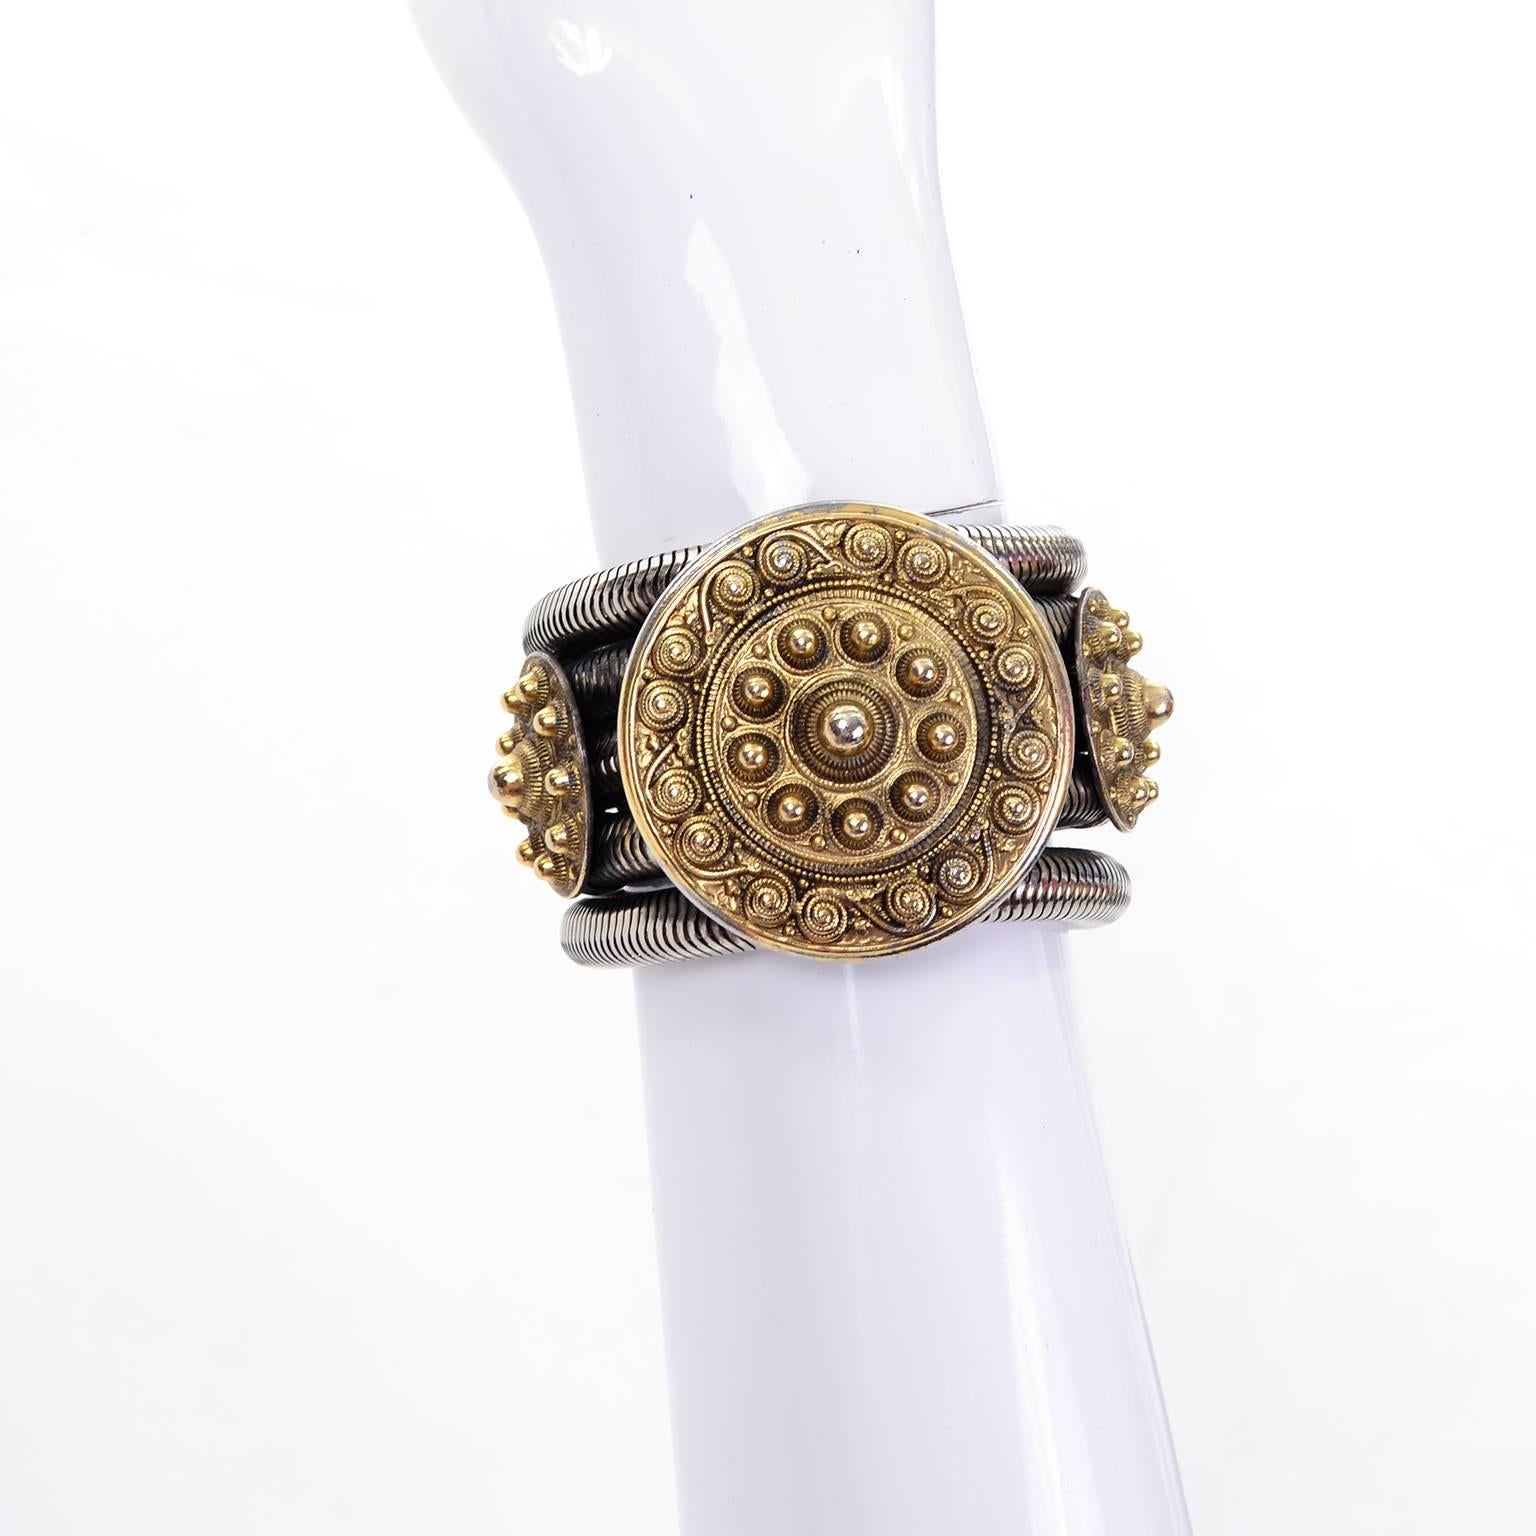 Dies ist ein einzigartiges und atemberaubendes Armband aus den 1980er Jahren, entworfen von Edouard Rambaud Paris. Es besteht aus fünf silberfarbenen Serpentinen, die durch drei zentrale goldfarbene Kreise miteinander verbunden sind. Der zentrale